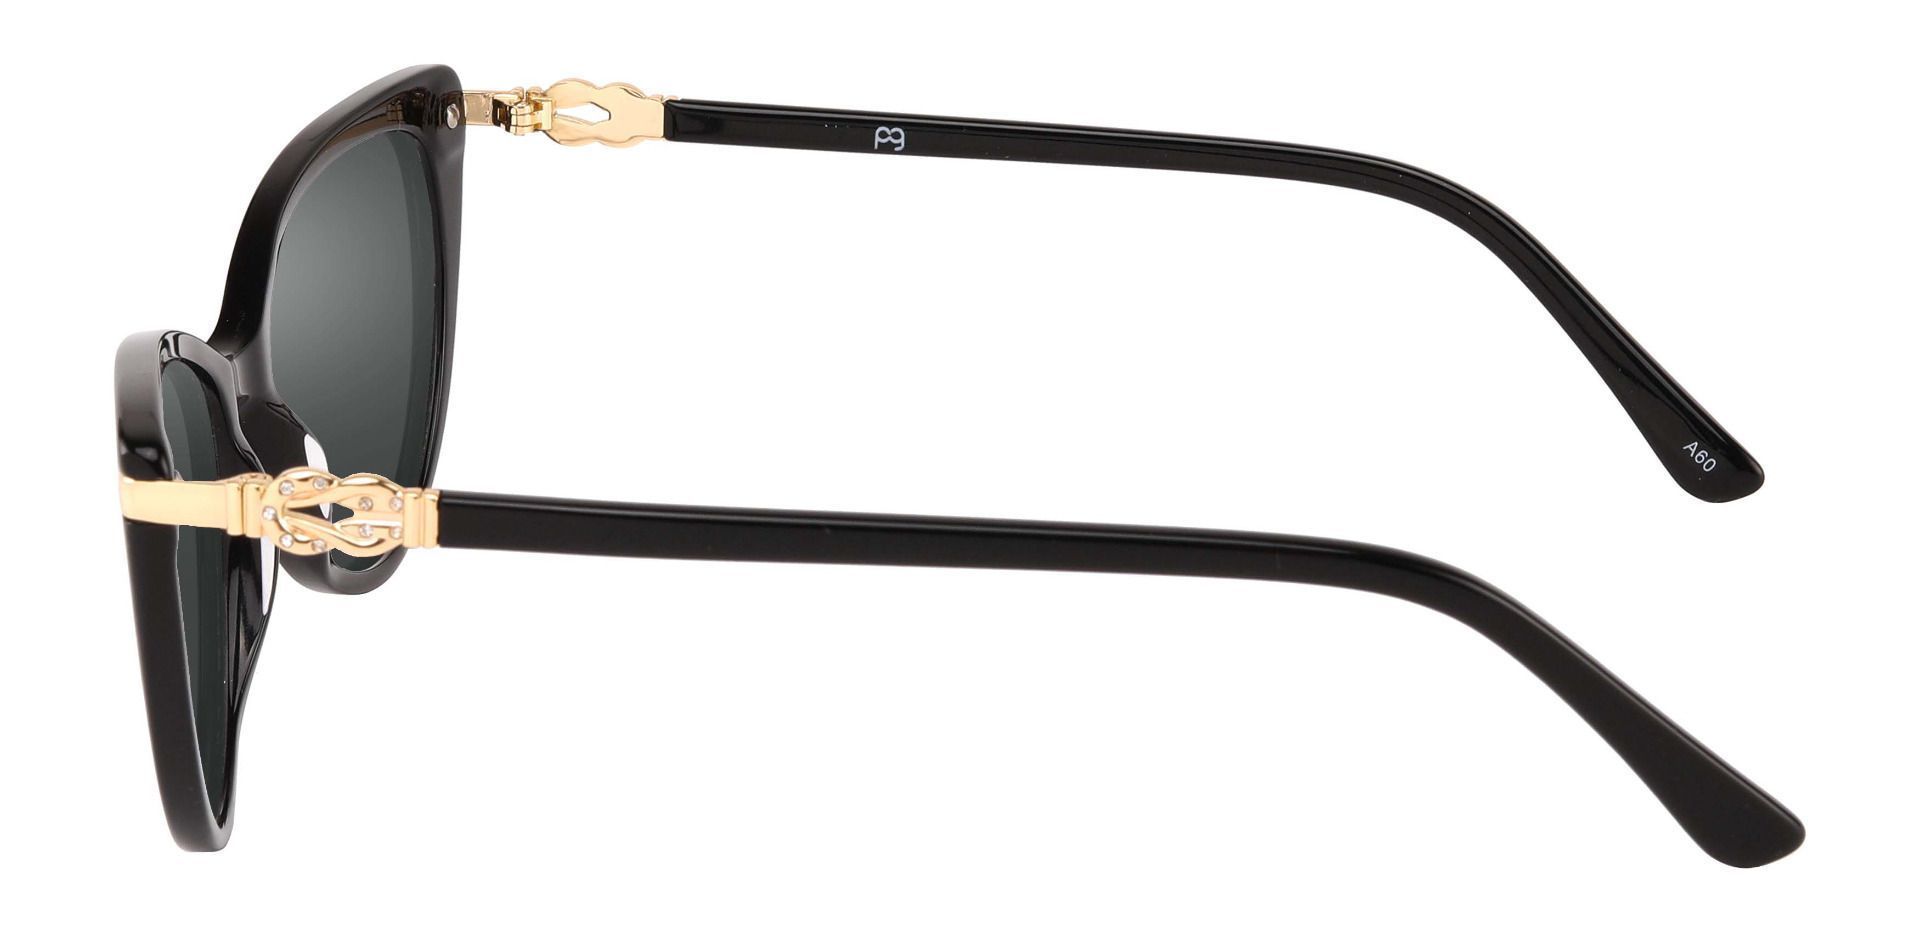 Starla Cat Eye Progressive Sunglasses - Black Frame With Gray Lenses